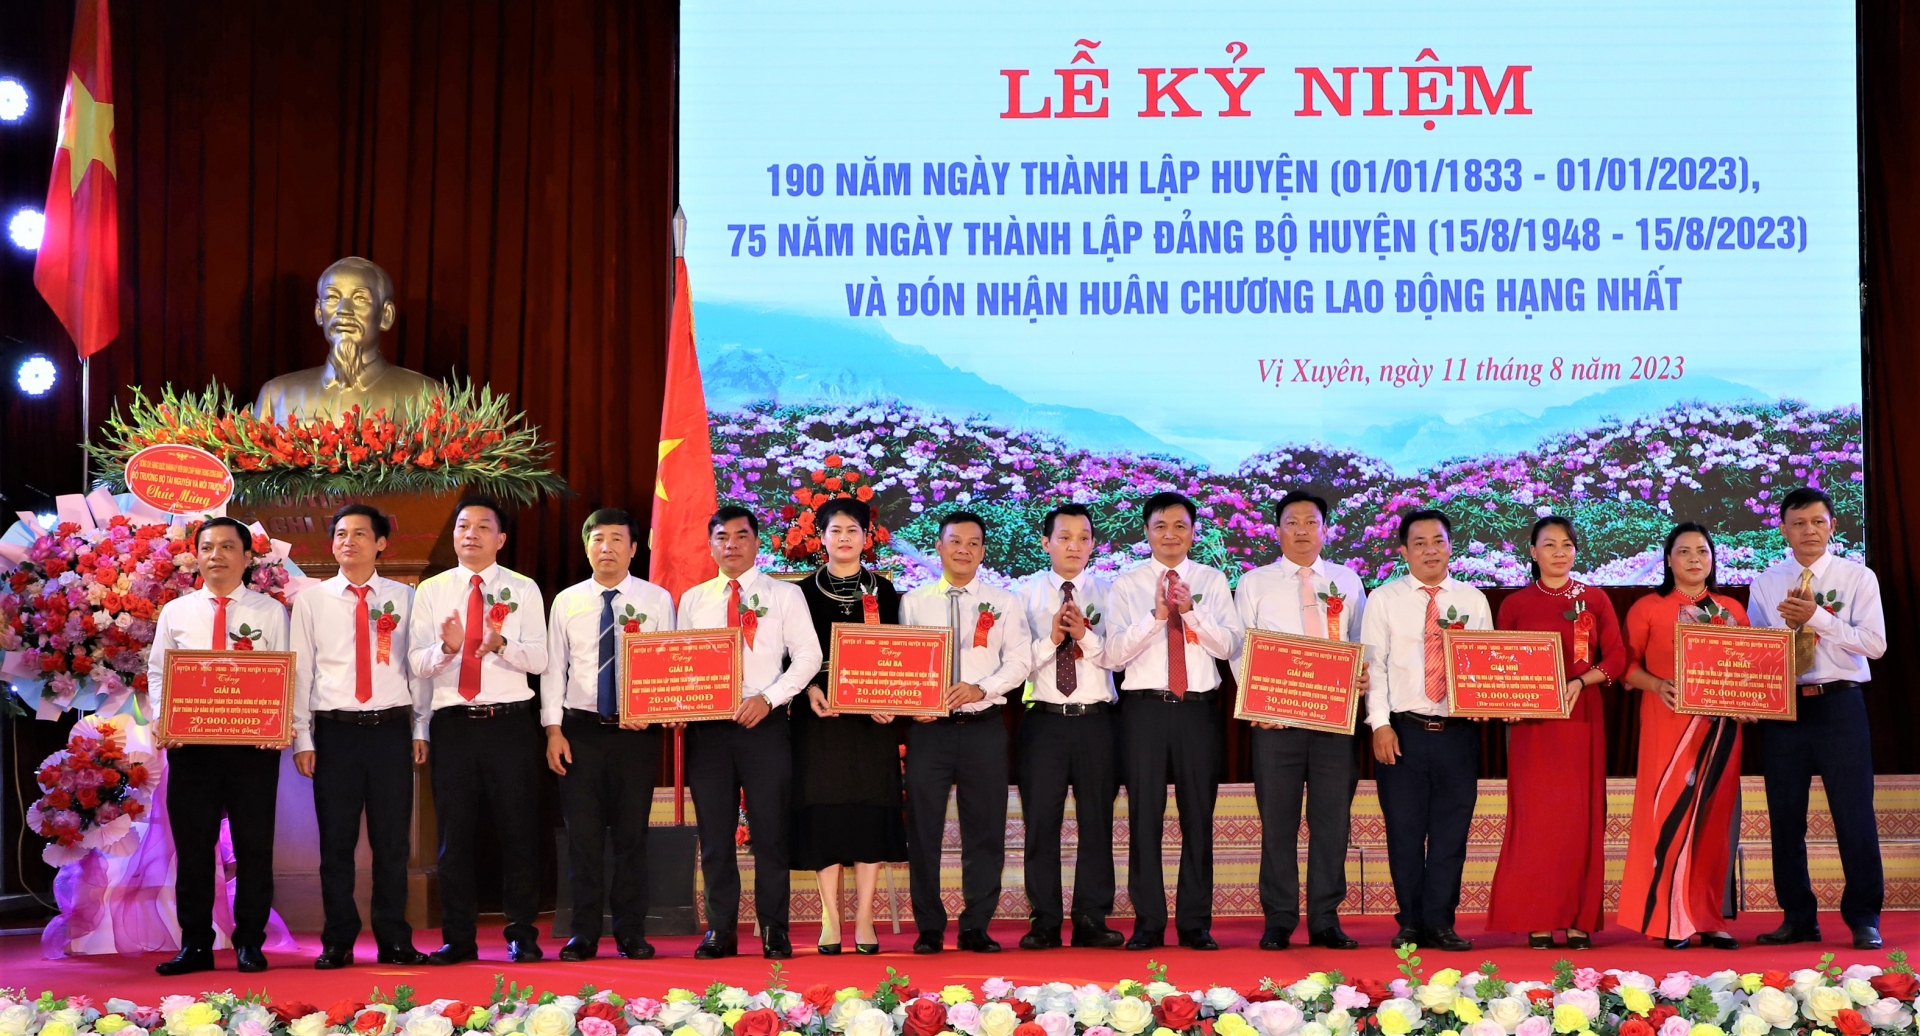 Lãnh đạo huyện Vị Xuyên trao giải Nhất, Nhì, Ba cho các tập thể có thành tích xuất sắc trong phong trào thi đua lập thành tích chào mừng 190 năm ngày thành lập huyện, 75 năm ngày thành lập Đảng bộ huyện Vị Xuyên.